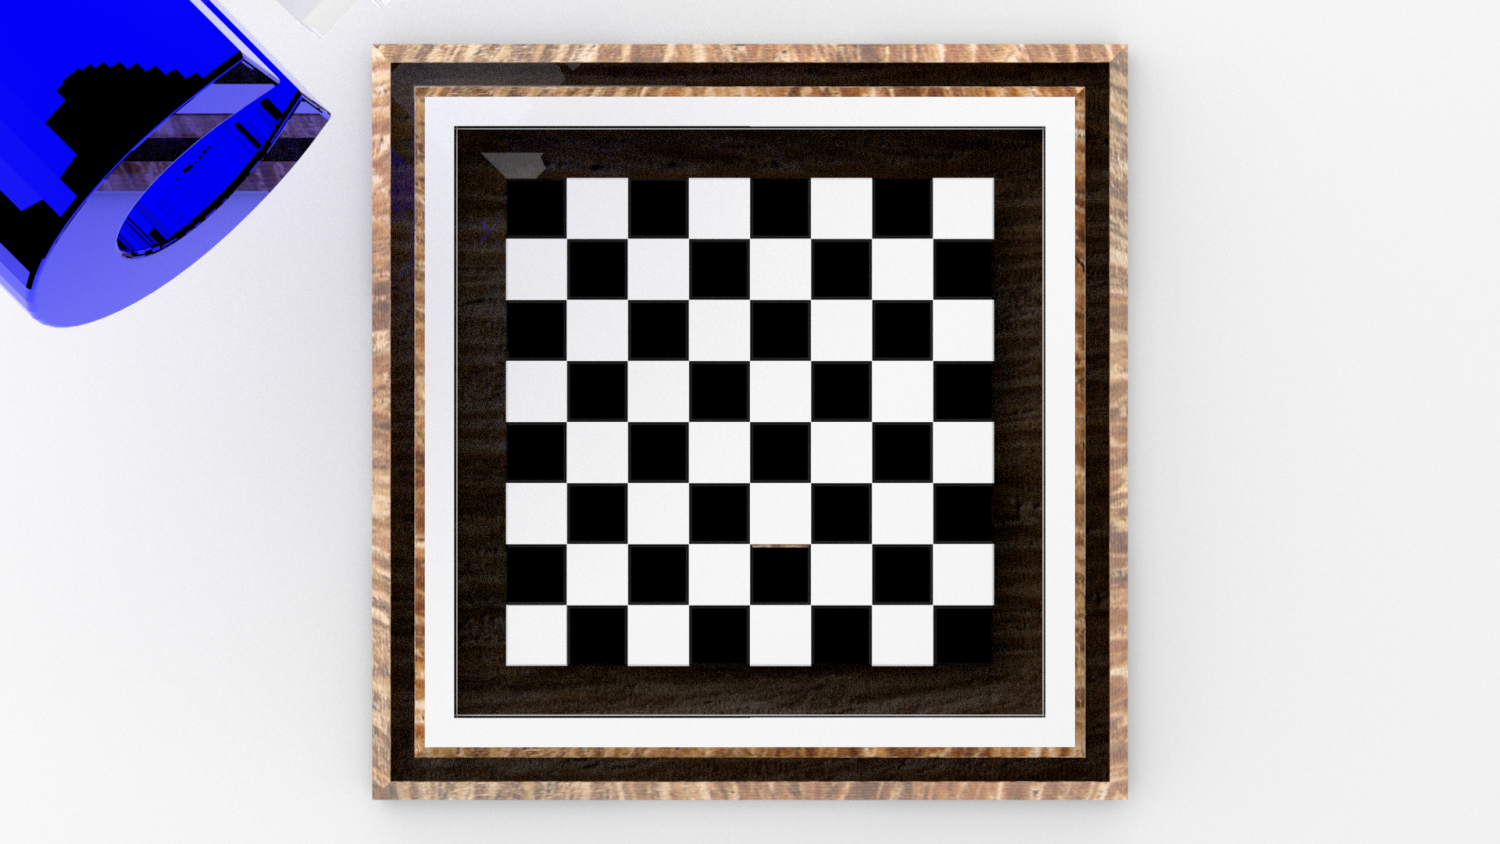 Cuantos cuadrados tiene un tablero de ajedrez